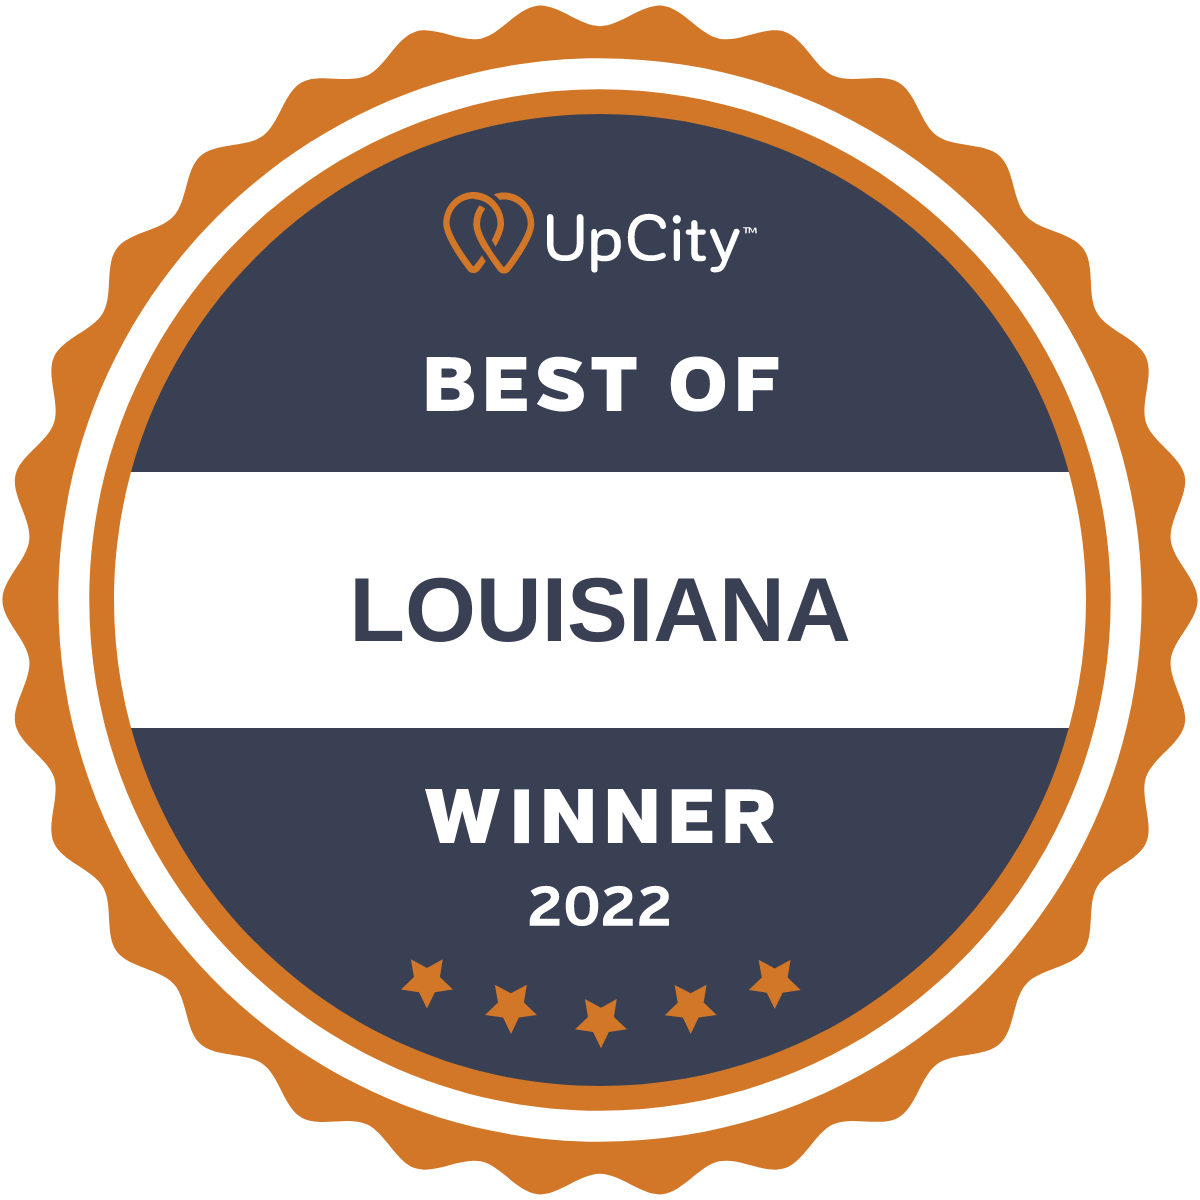 UpCity Best of Louisiana 2022